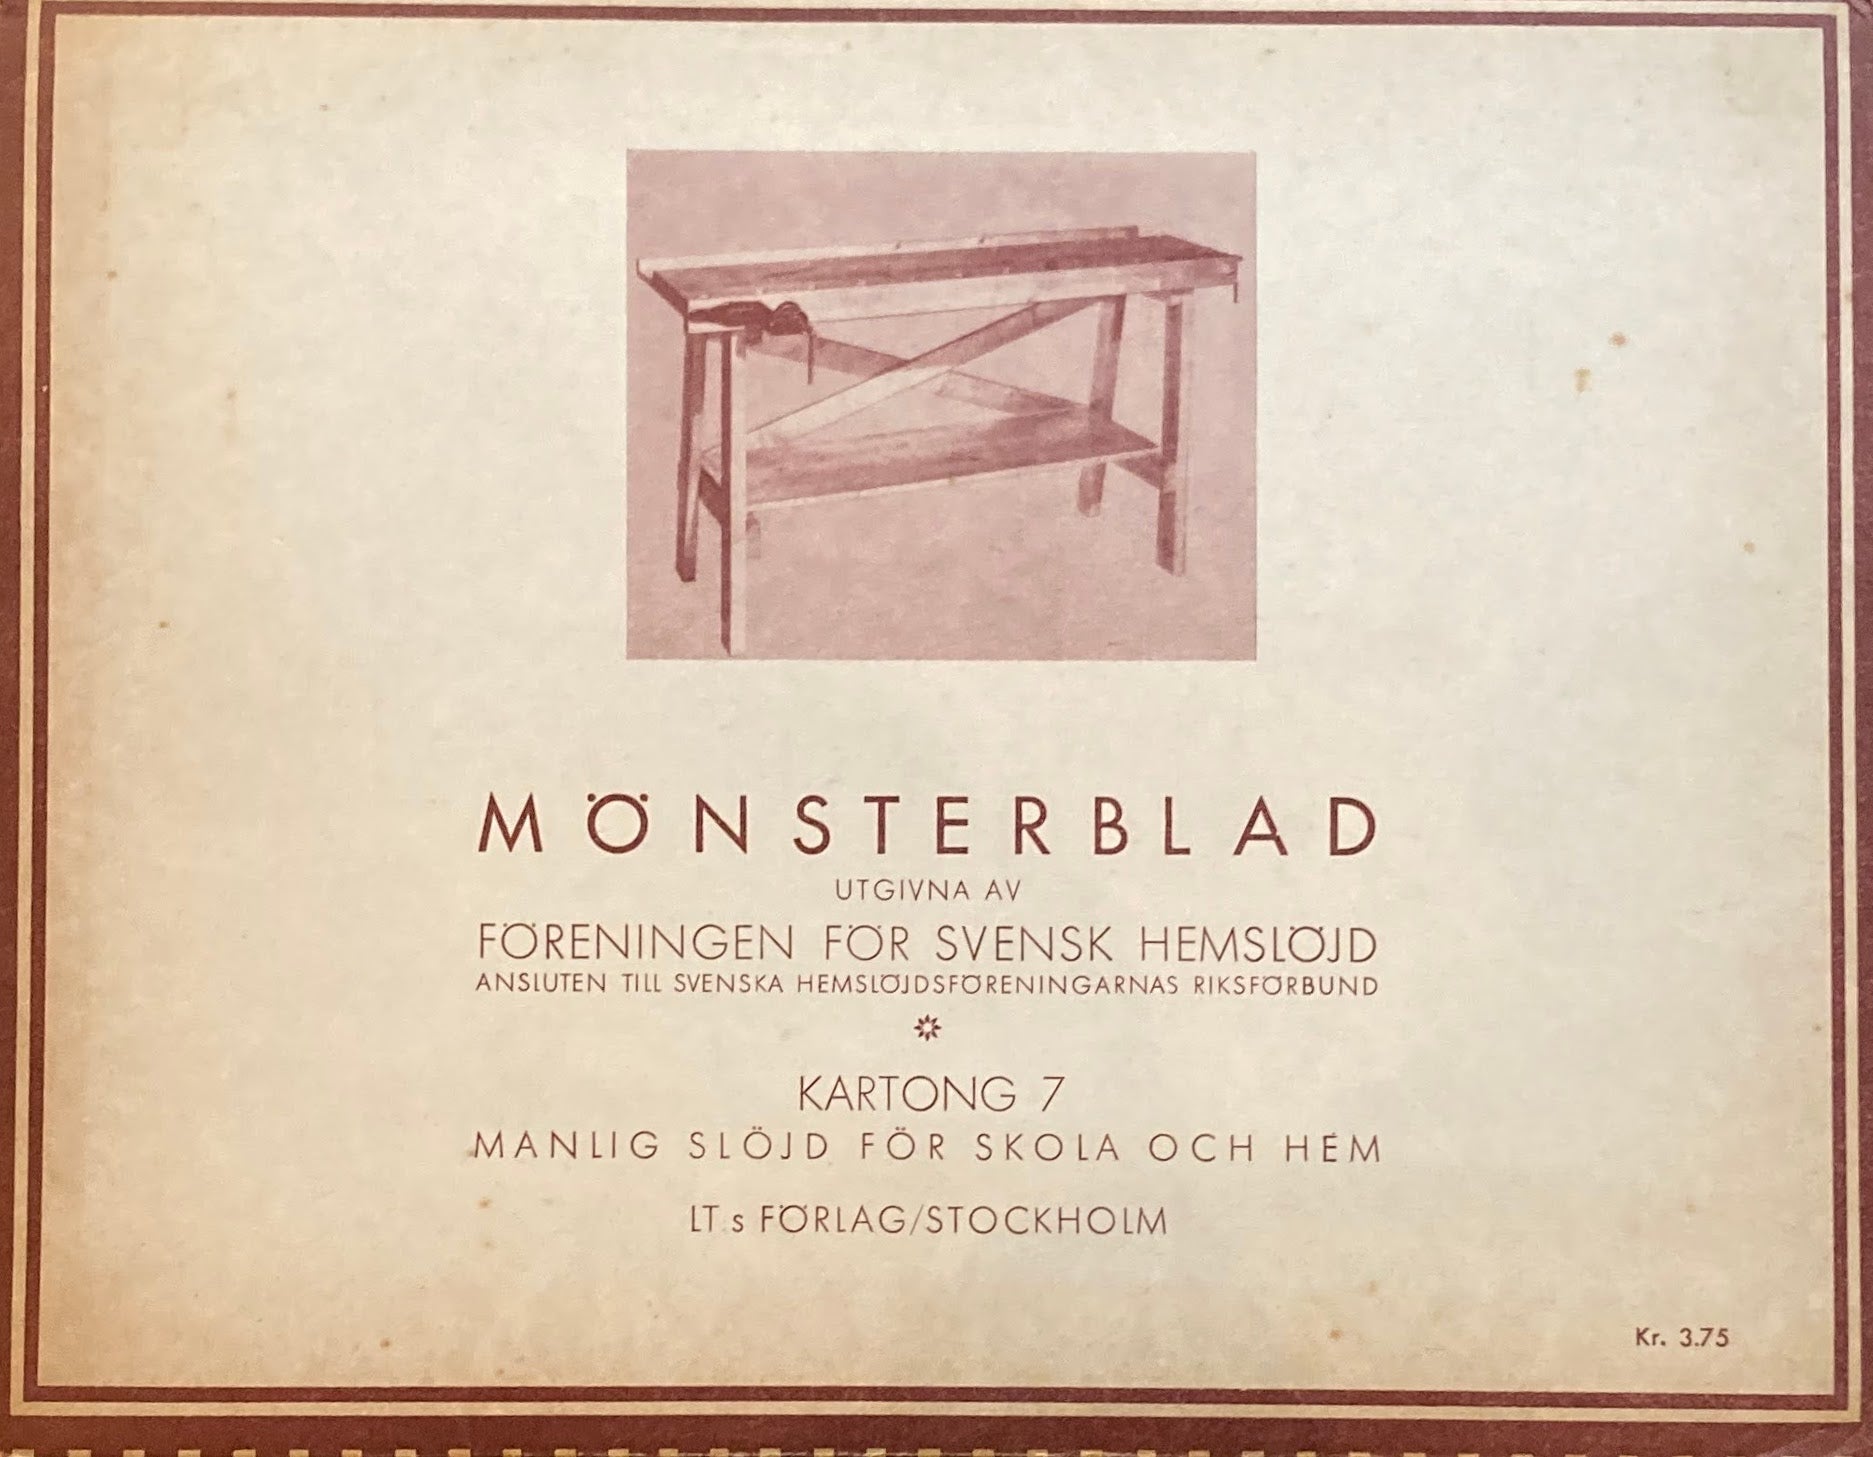 Monsterblad Utgivna av Foreningen for svensk hemslojd　Manlig slojd for skola och hem　KARTONG7　＜日曜大工＞ スウェーデン手工芸協会　